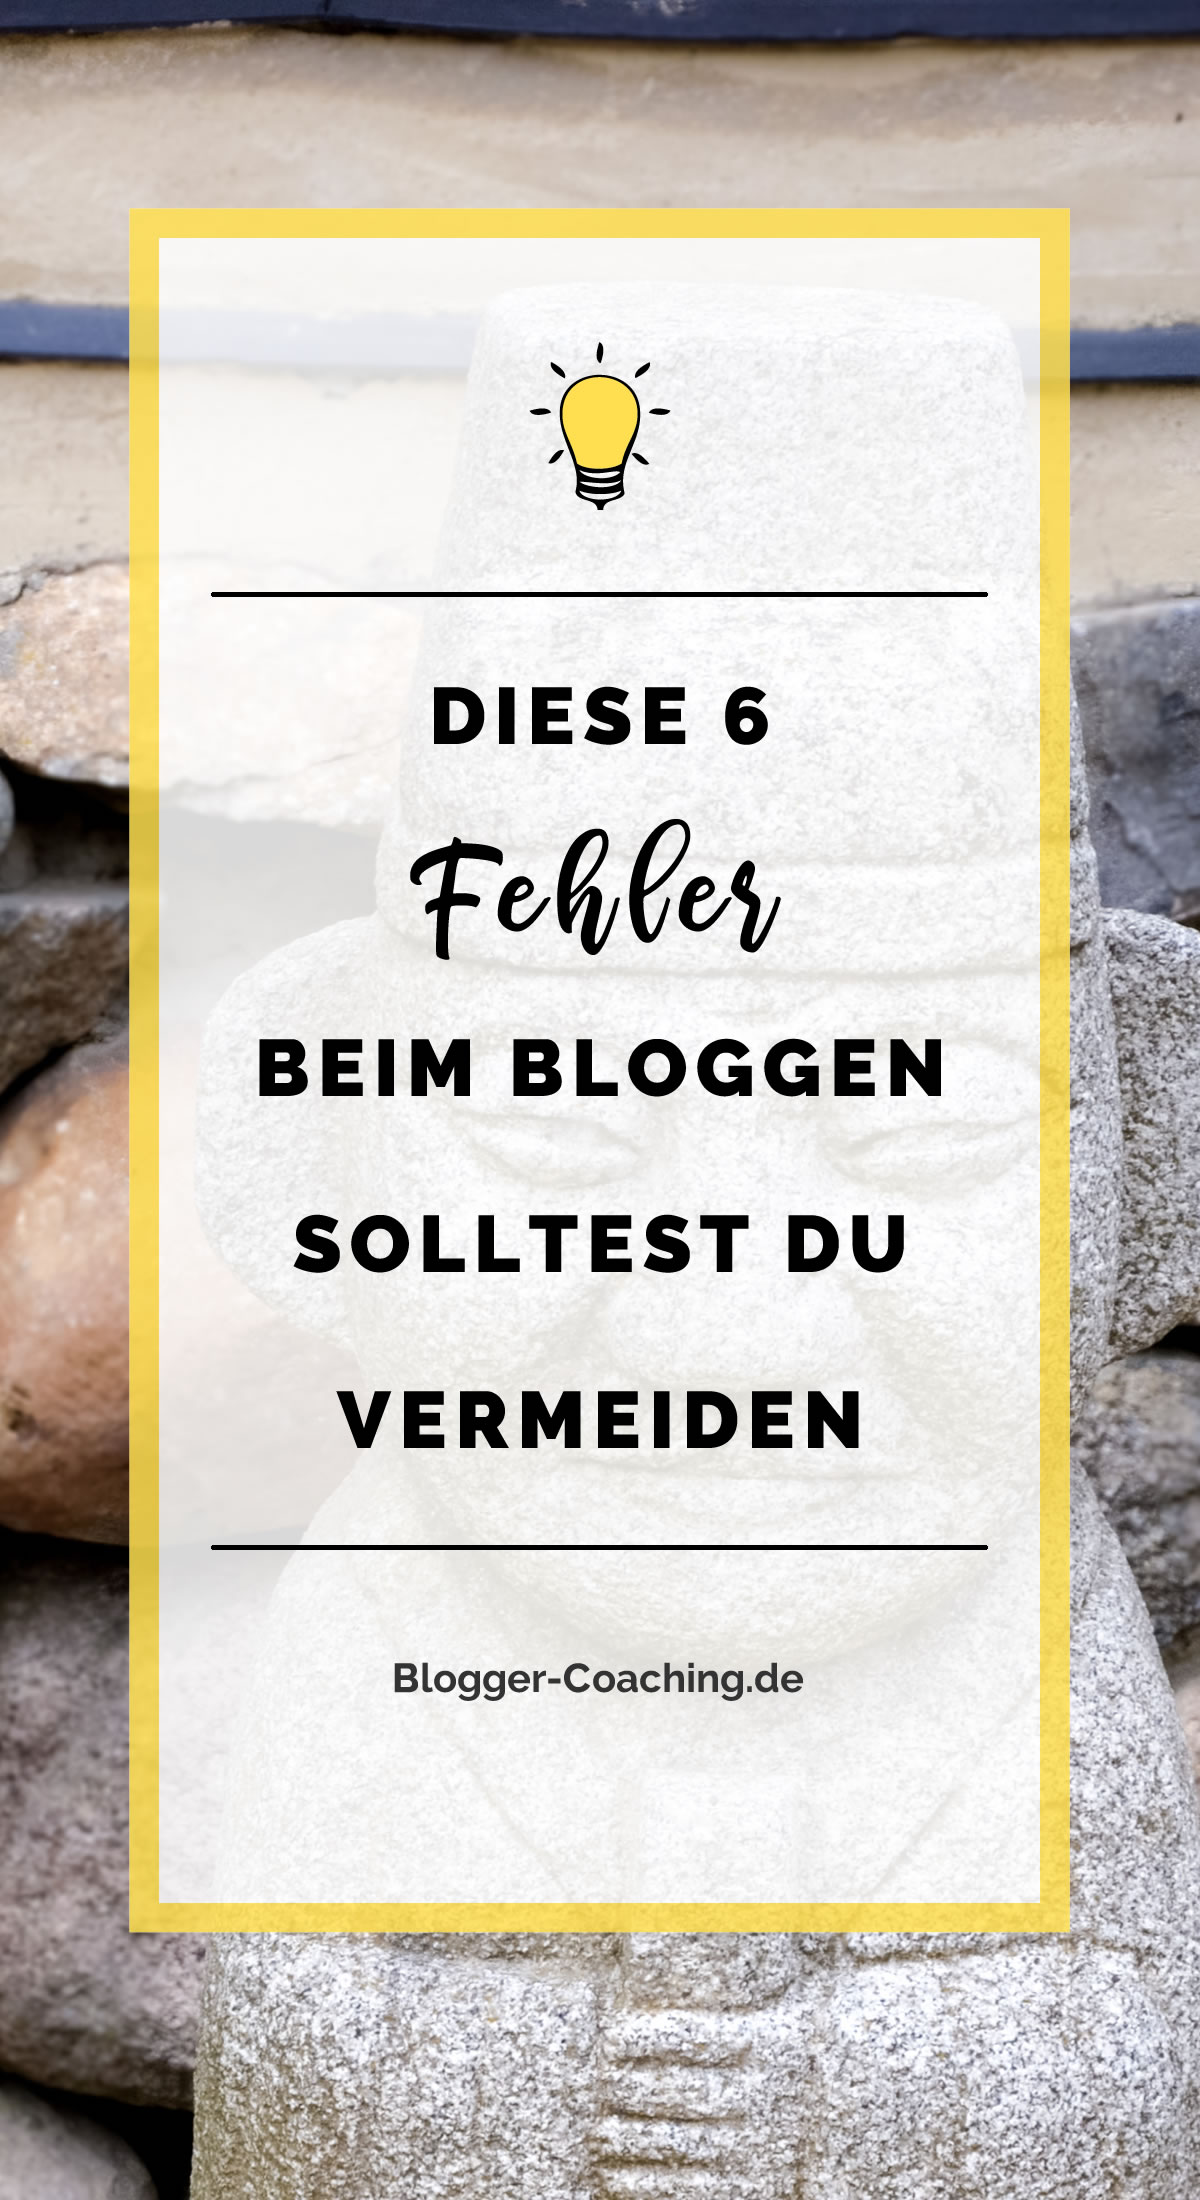 6 Anfängerfehler beim Bloggen und wie du sie vermeidest 1/3 | Blogger-Coaching.de - Erfolgs-Strategien für deinen Blog #blogger #erfolg